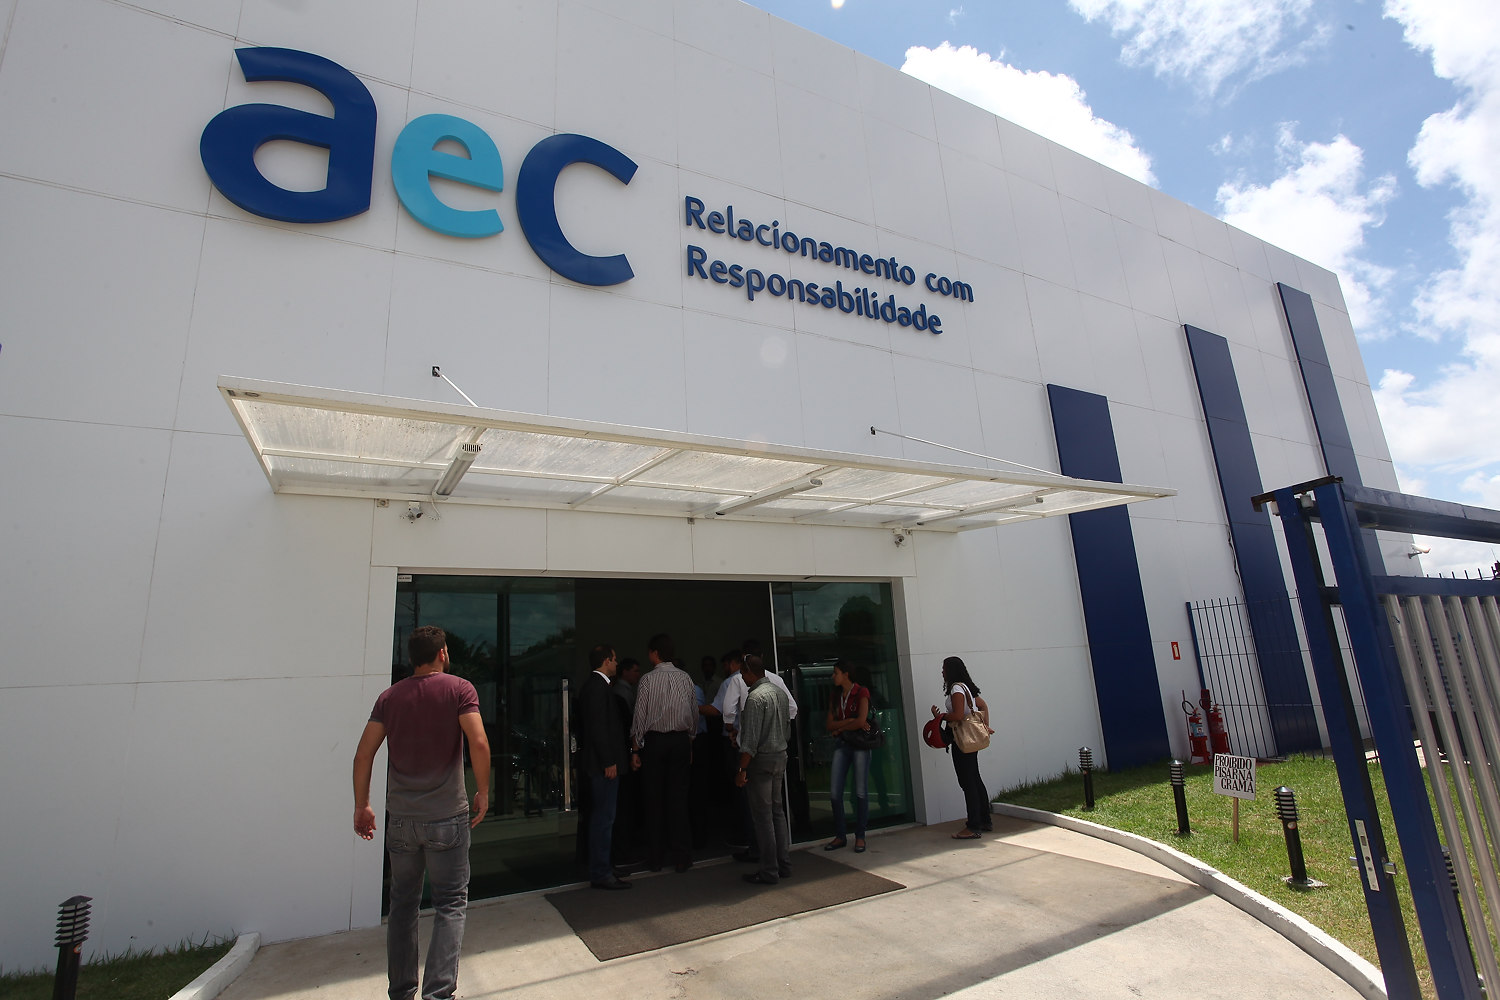 AeC abre 400 vagas de emprego em São Paulo; veja como se inscrever